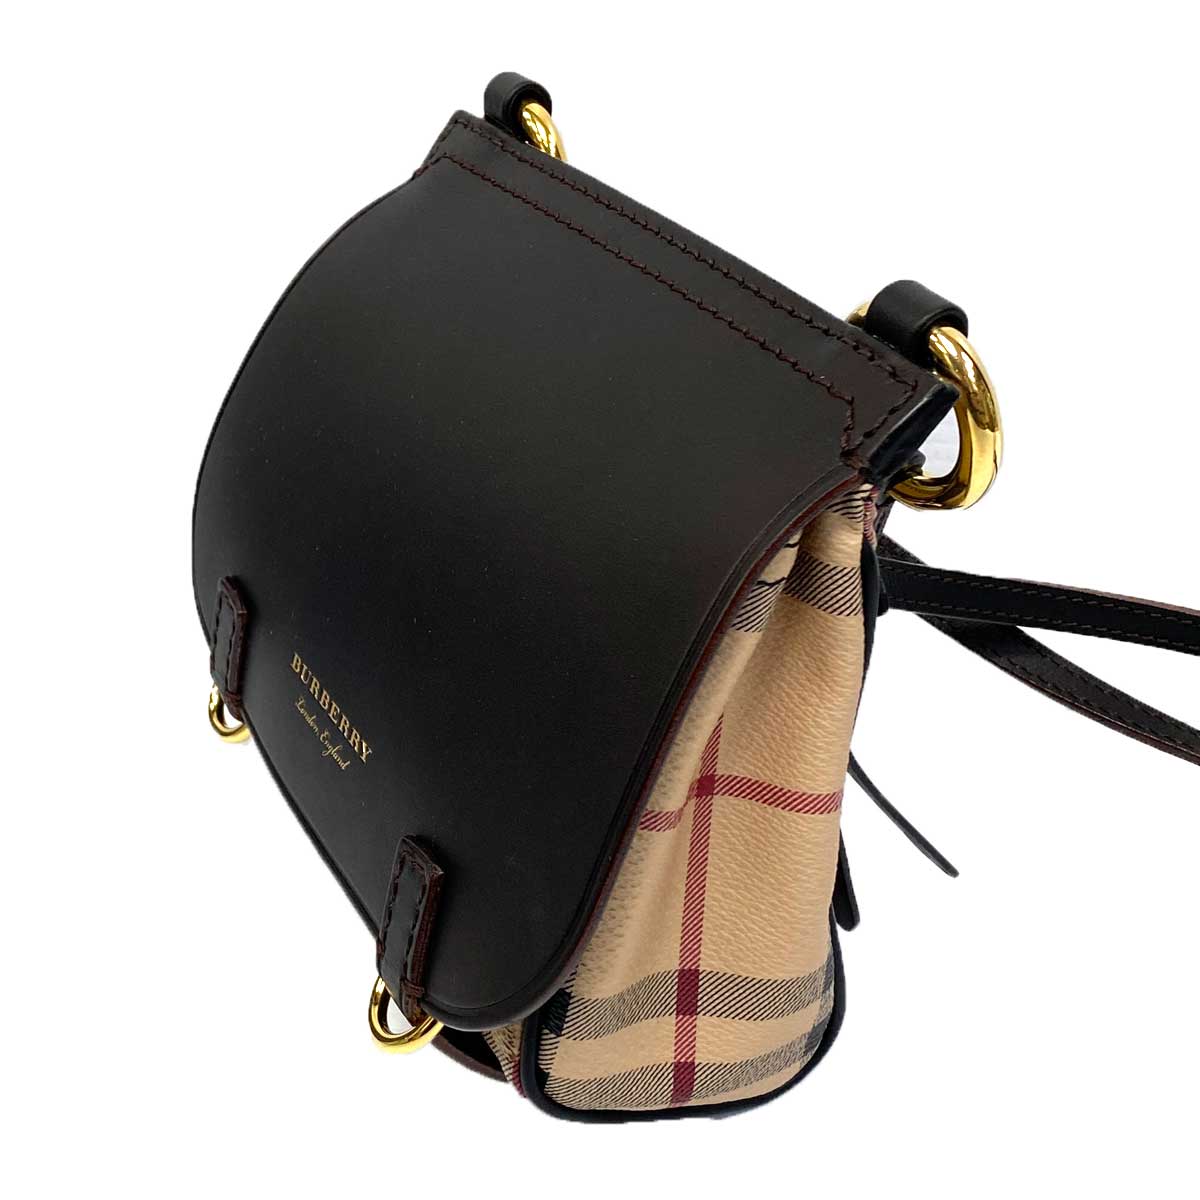 Burberry London Leather Bridle Saddle Bag - Black Shoulder Bags